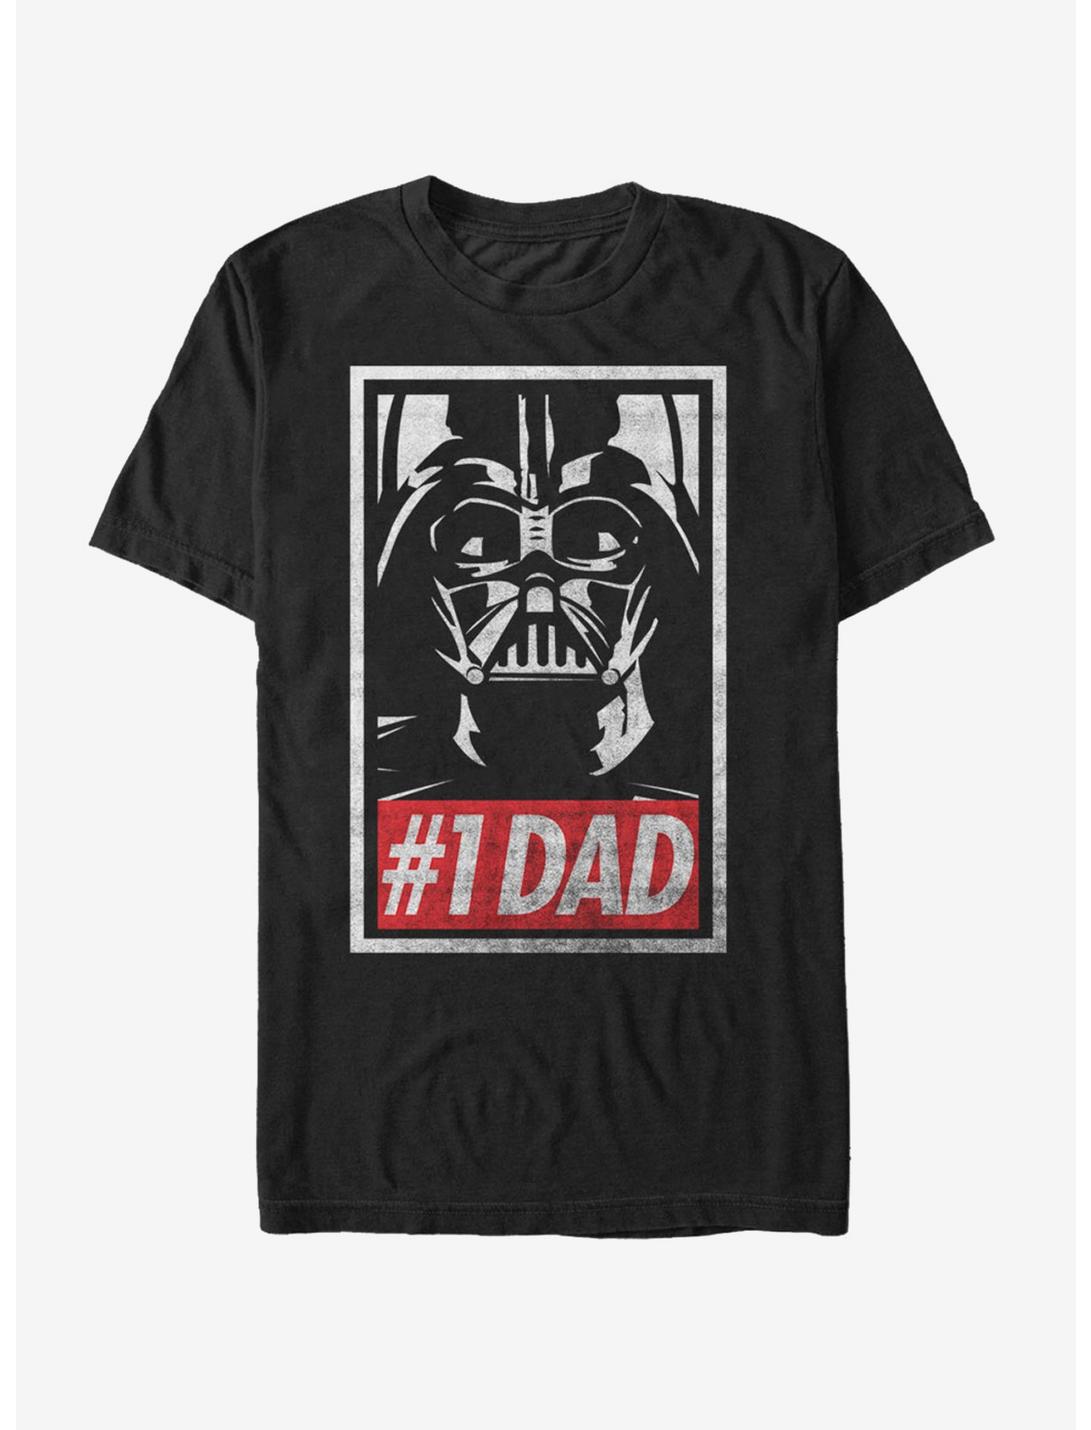 Star Wars Darth Vader Number One Dad T-Shirt, BLACK, hi-res